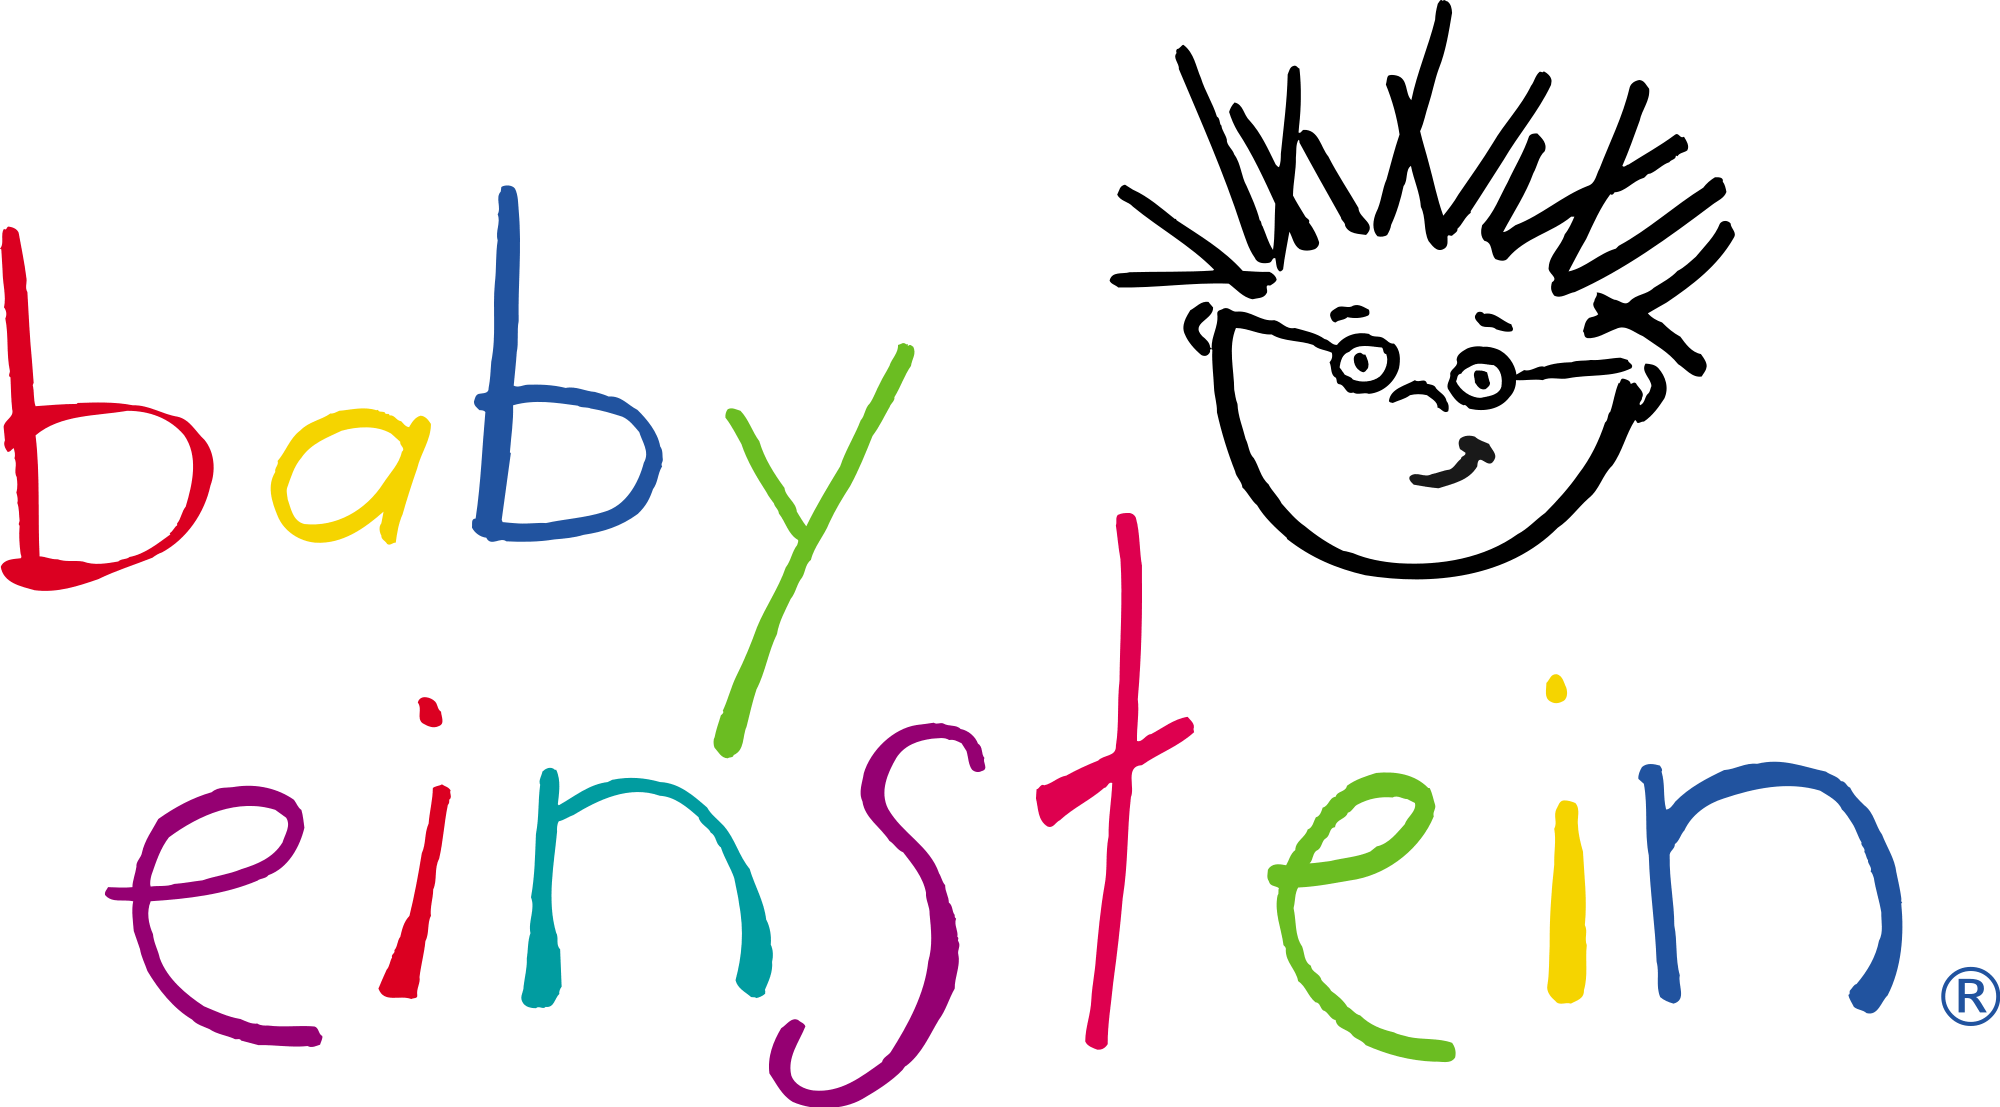 Little Einsteins Logo - Baby Einstein | Disney Wiki | FANDOM powered by Wikia